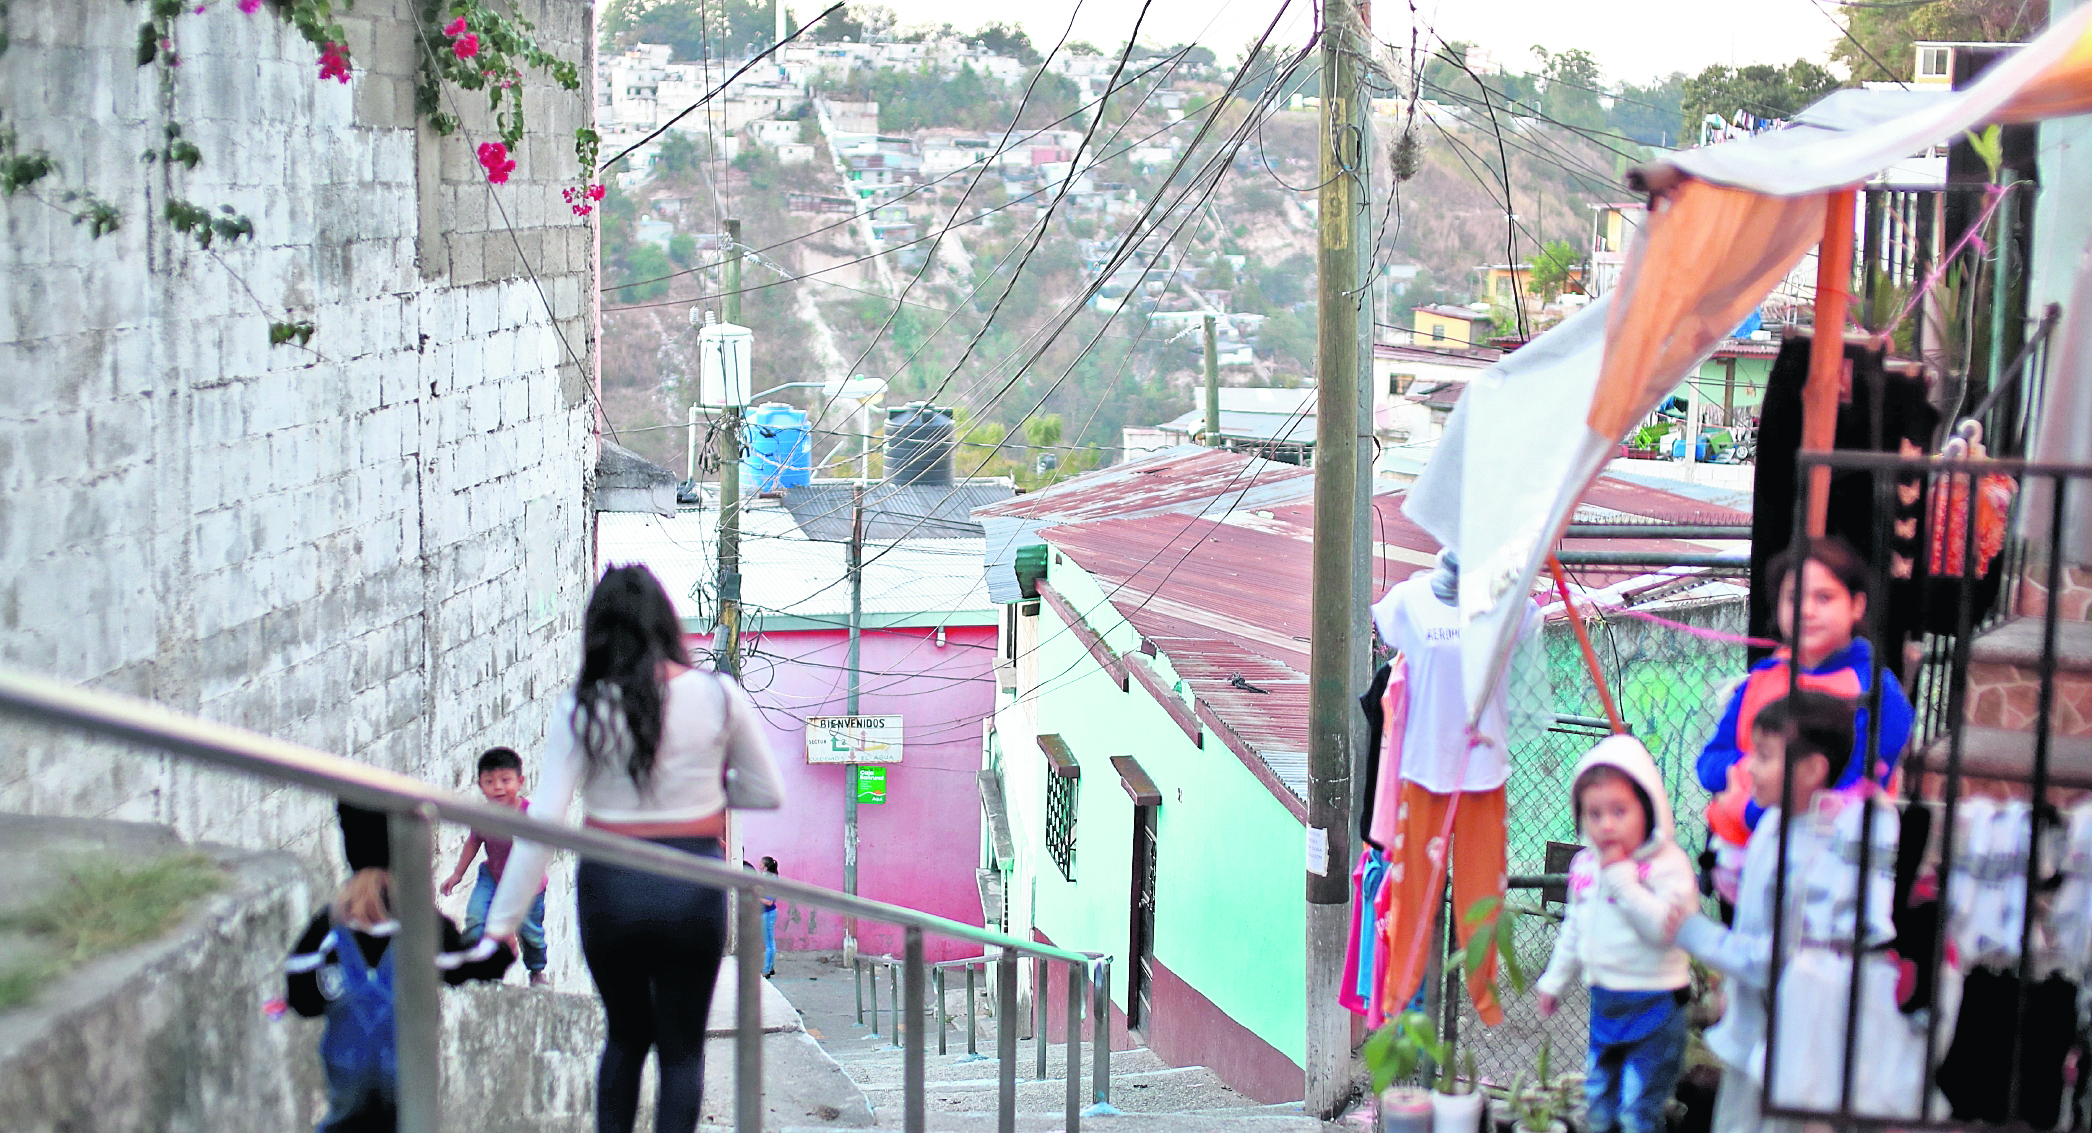 Vecinos de la Colonia San José Buena Vista, Barrio El Gallito, en la zona 3 de la ciudad, reportan retumbos en los alrededores, recree que podrían provenir del relleno sanitario .

foto Carlos Hernández
19/01/2022